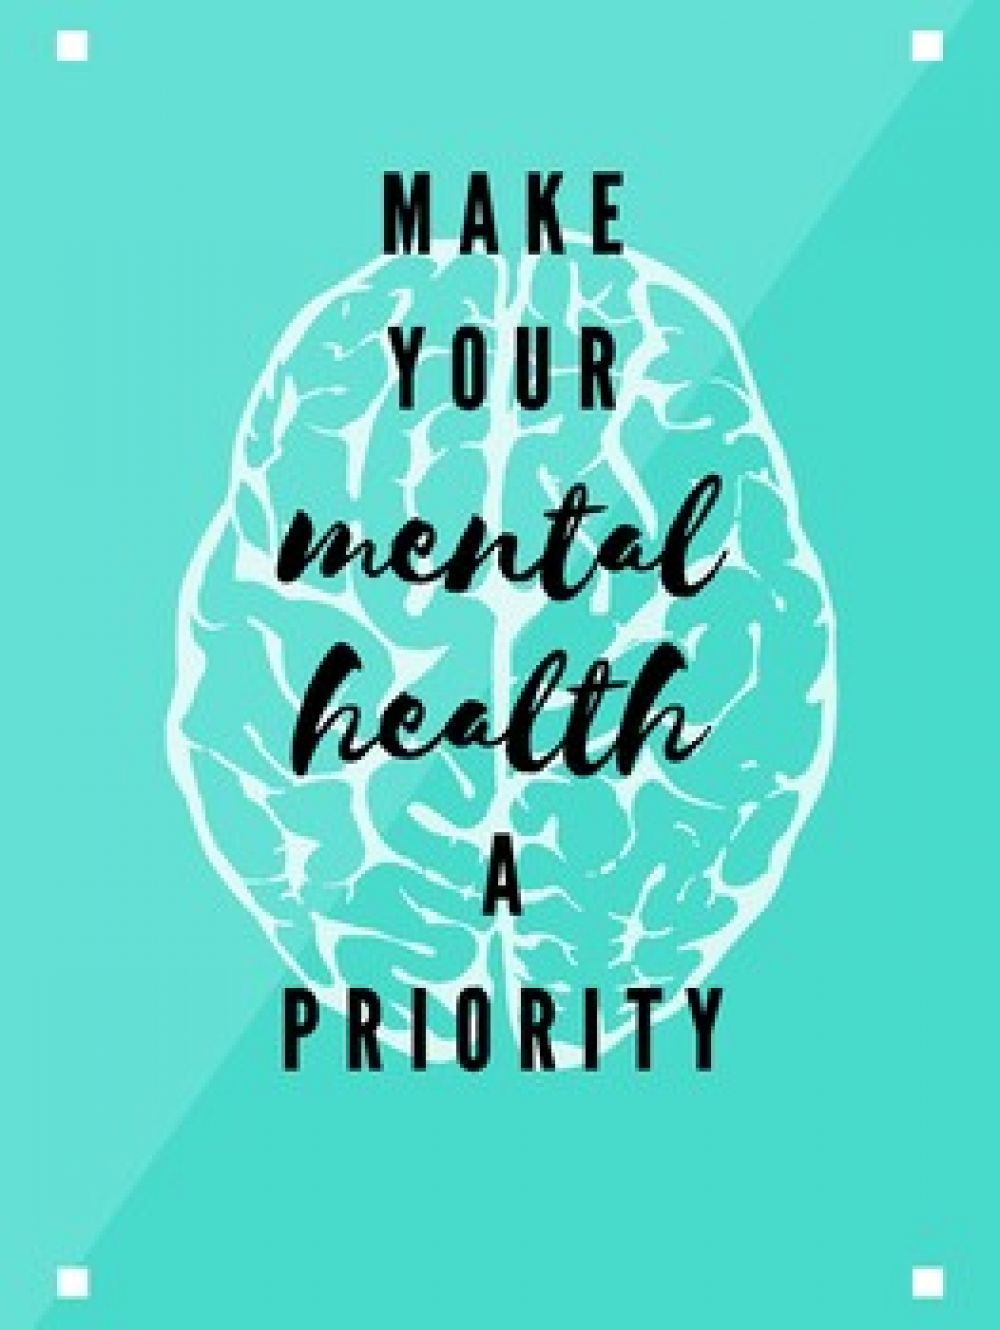 Mental-Health-Matters-Mt-Vernon-IL-priority